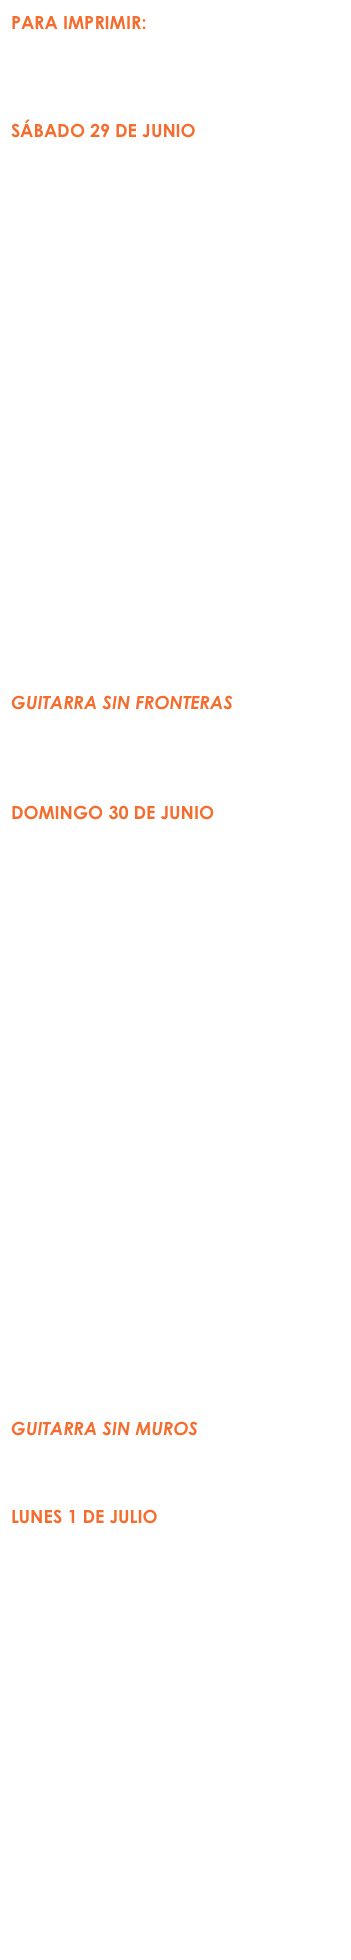 PARA IMPRIMIR:
Formulario de Inscripción 2019.pdf
CALENDARIO DE ACTIVIDADES.pdf
Información: 6983-4345

SÁBADO 29 DE JUNIO
Matrícula
9:00 AM

Concurso de Guitarra
Fase Prelimiar
(Auditorio)
9:00-1:00 PM

Taller de Técnica
(Salón de danza)
9:00-12:00 PM
Lorenzo Bernardi (Italia)

Clase Maestra
(Salón de danza)
2:00-5:00 PM
Isaac Bustos (Nicaragua)

Orquesta de Guitarras 
(Salón de danza)
2:00-5:00 PM
Nadia Borislova (directora)

Concierto (Auditorio)
6:00 PM
Guitarra SIN FRONTERAS
Marco Corrales (Costa Rica)
Dúo Eros Trato (Costa Rica)
Miguel Álvarez Vásquez (Chile)

DOMINGO 30 DE JUNIO
Concurso de Guitarra
Fase Semifinal
(Auditorio)
9:00-12:00 PM

Taller de Técnica
(Salón de danza)
9:00-12:00 PM
Giordano Passini (Italia)

Conferencias
(Auditorio)
2:00-4:00 PM
“La mandolina y el arte pictórico:
Historia a través de imágenes”
Carlo Aonzo (Italia)
“El tiple colombiano”
Lucas Saboya (Colombia)
(Entrada libre)

Orquesta de Guitarras 
(Salón de danza)
2:00-4:00 PM
Nadia Borislova (directora)

Concierto (Auditorio)
7:30 PM
Guitarra SIN MUROS
Jesús Serrano (México)
Xavier Jara (Estados Unidos)

LUNES 1 DE JULIO
Concurso de Guitarra
Fase Final
(Auditorio)
9:00-12:00 PM

Taller de Técnica
(Salón de danza)
9:00-12:00 PM
Giordano Passini (Italia)

Muestra de Guitarras de Paracho
(Auditorio)
12:00-1:00 PM
Guitarras de Gerardo Escobedo, Gabriel Hernández y 
Arnulfo Rubio